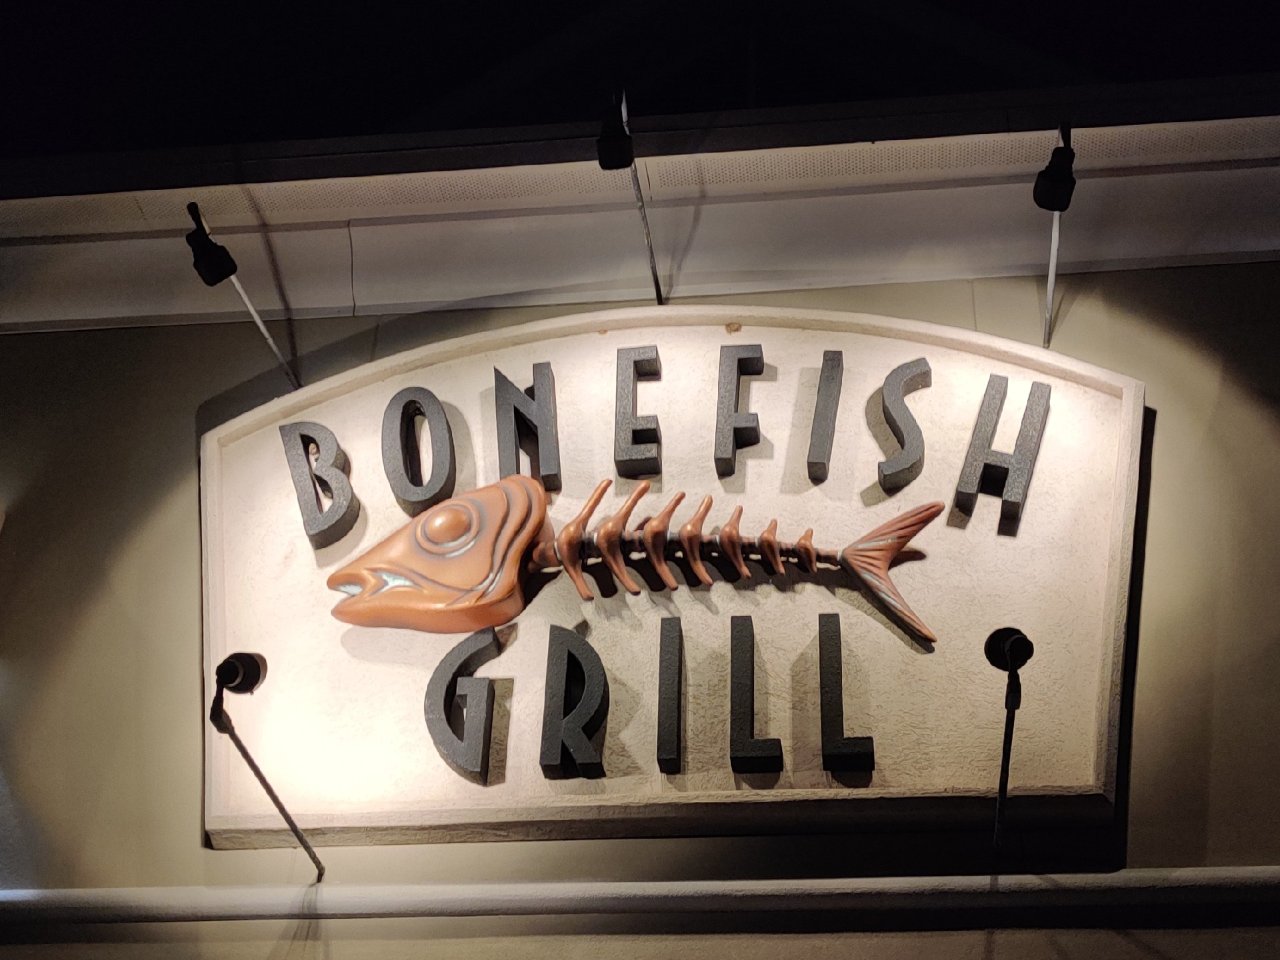 Bonefish Grill 